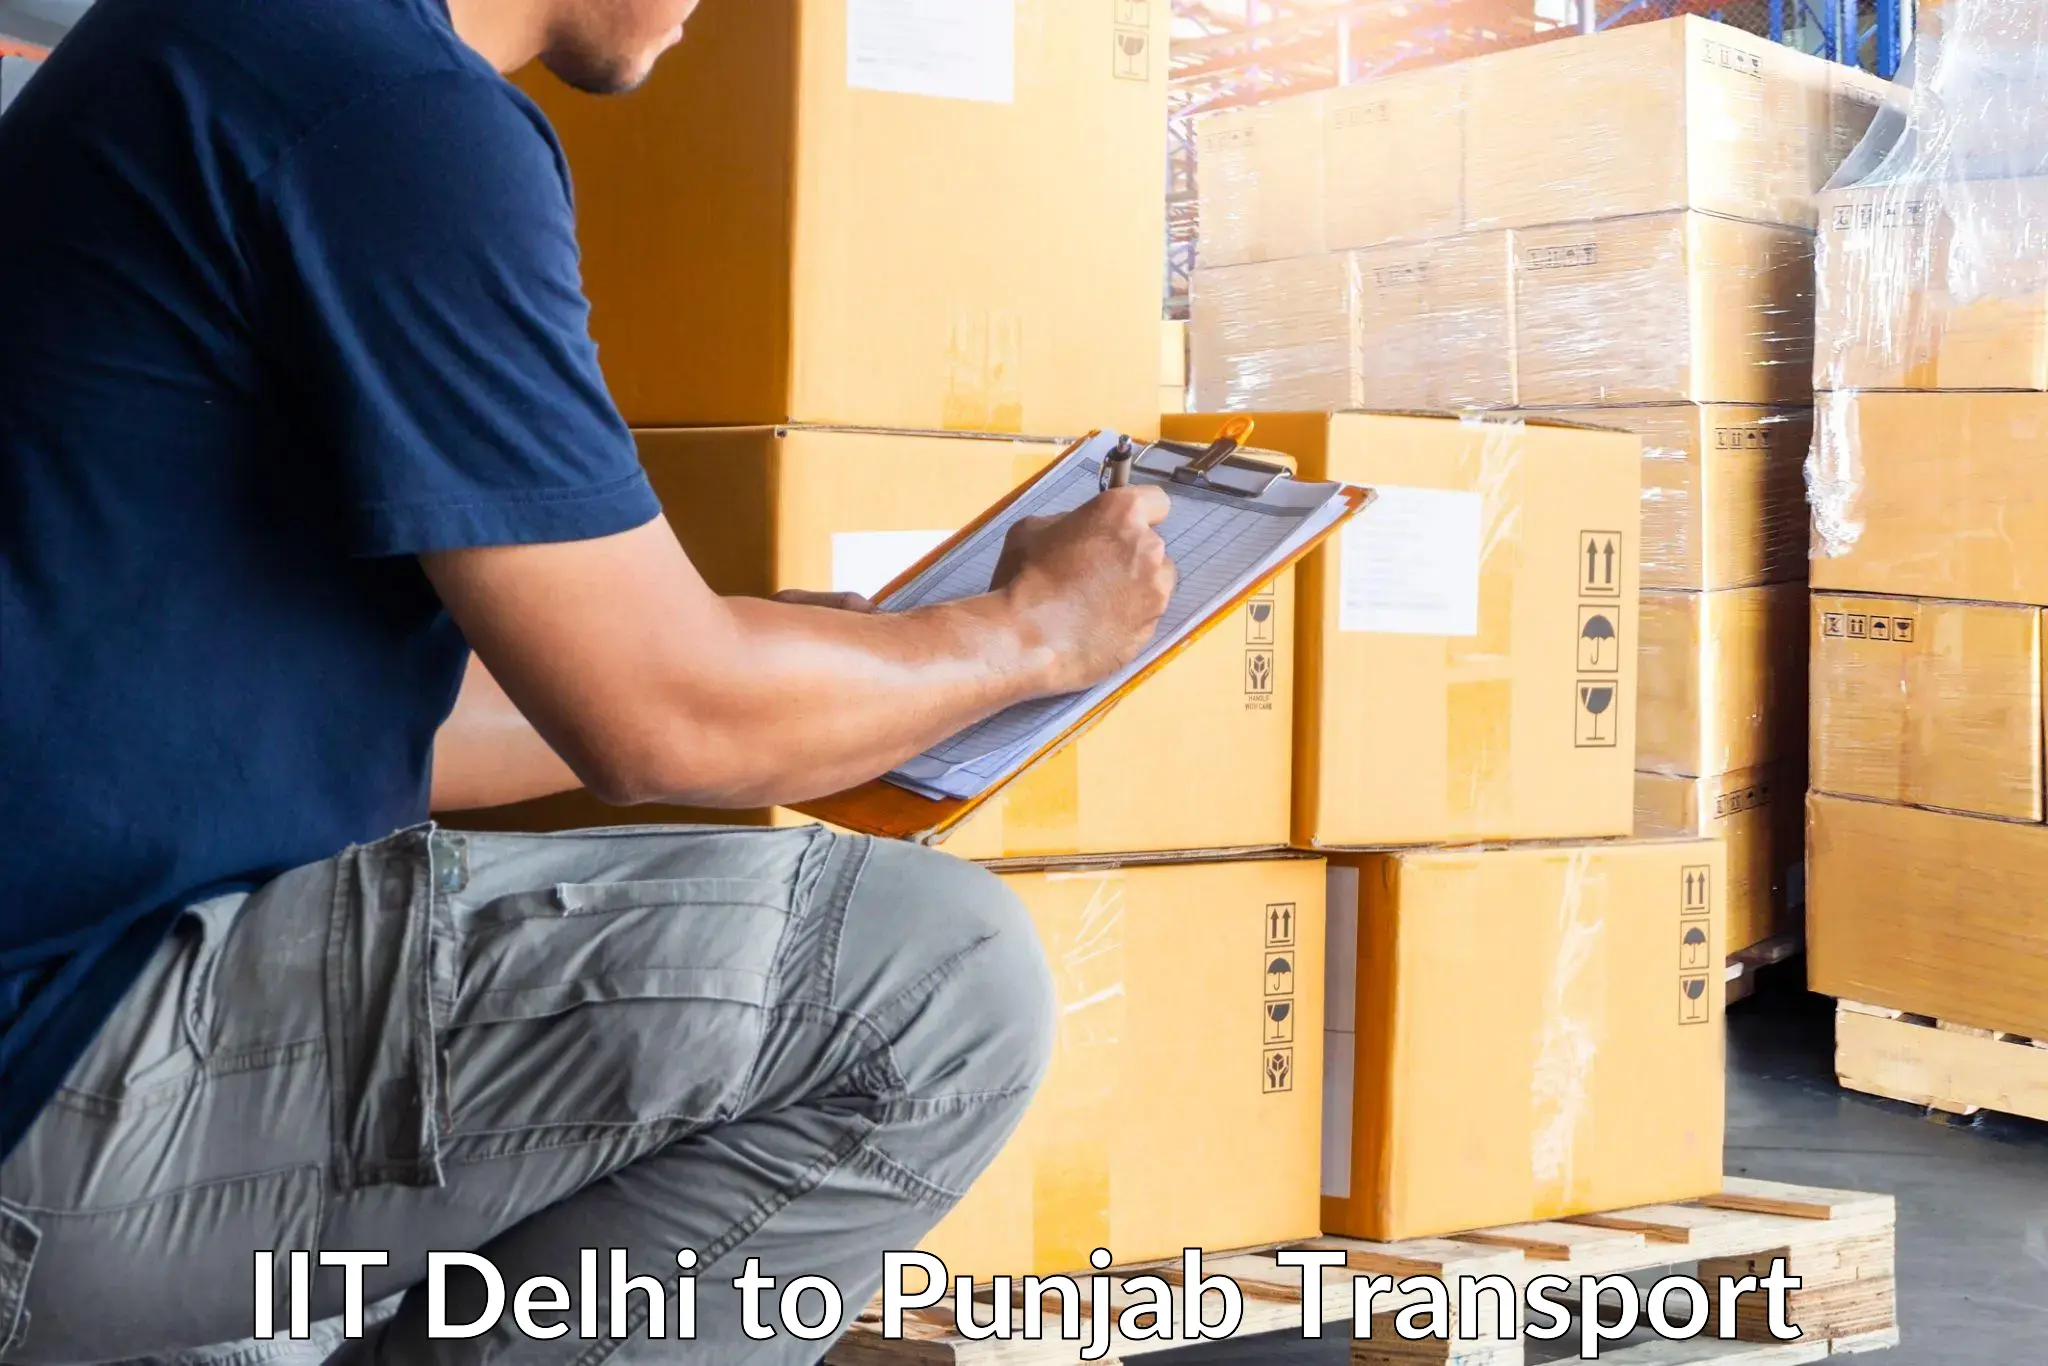 Online transport IIT Delhi to Sultanpur Lodhi